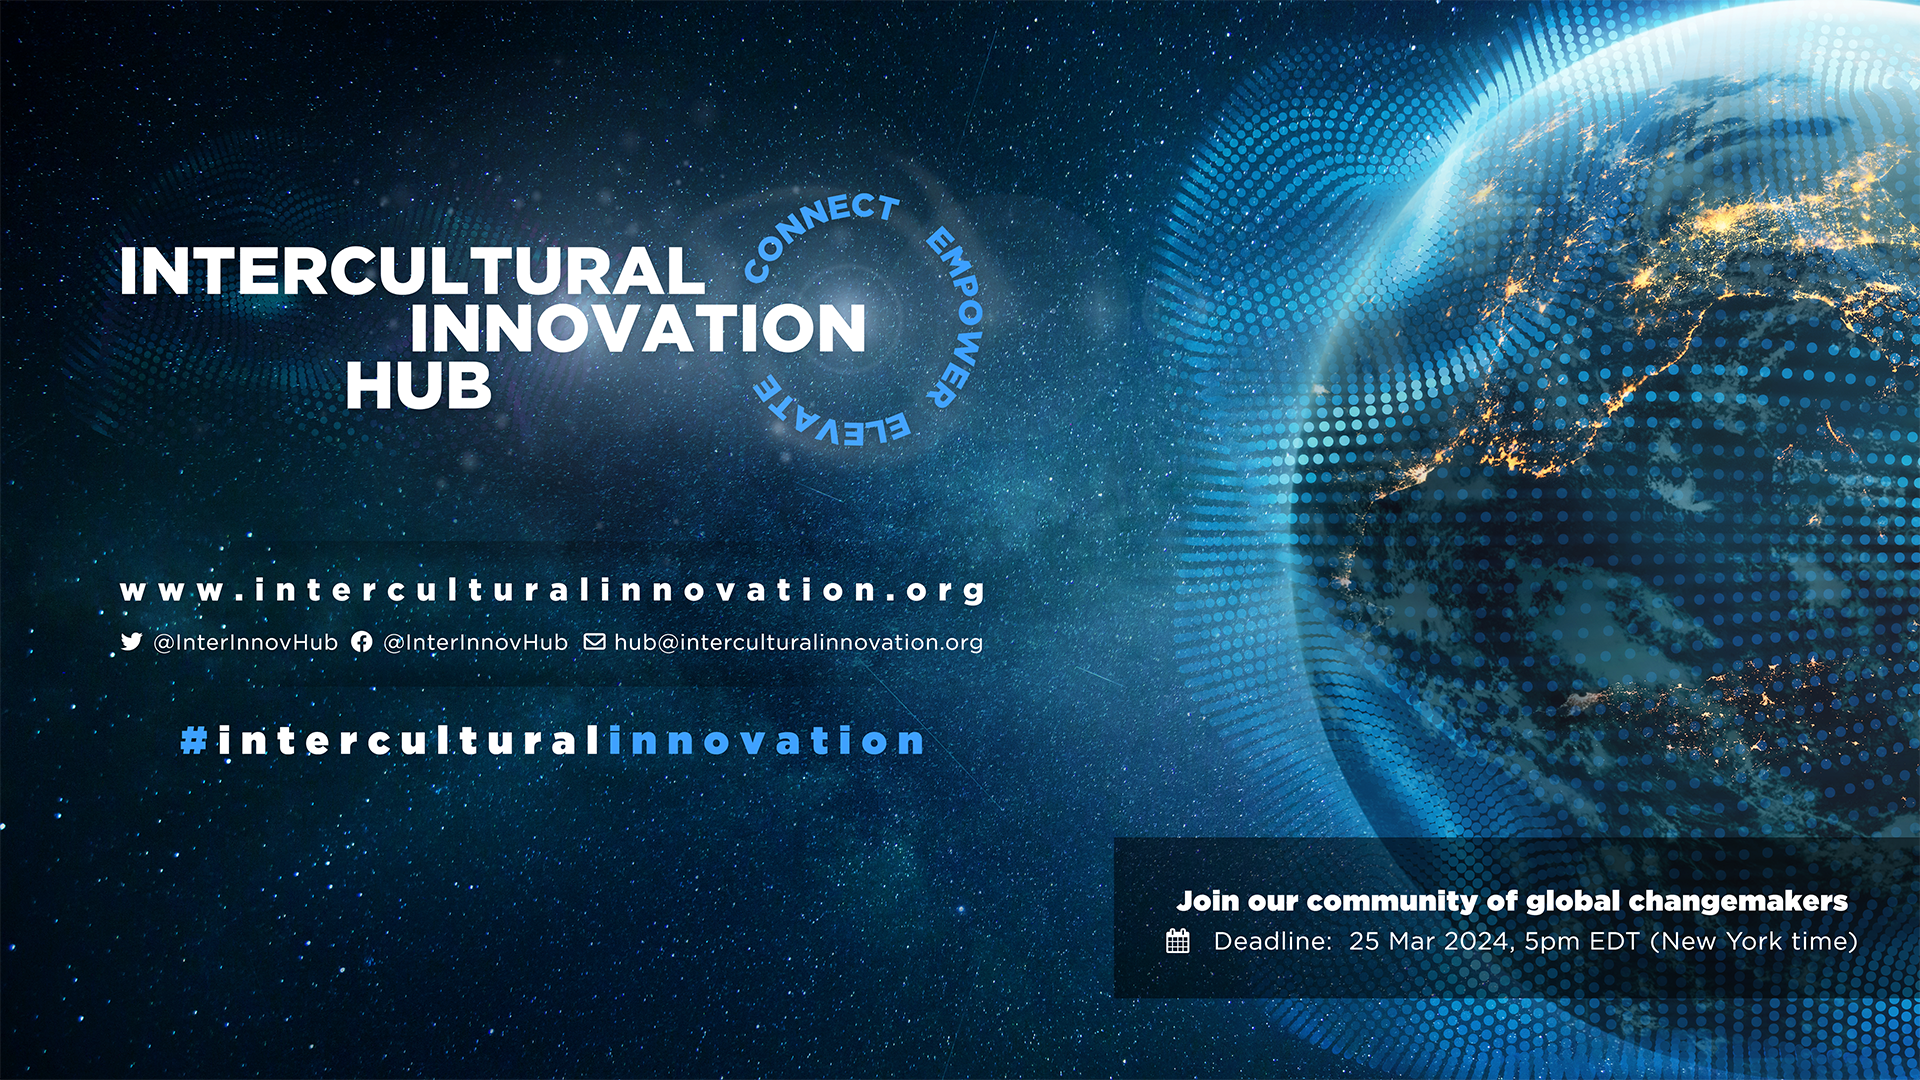 بدء استقبال الطلبات لمركز الابتكار بين الثقافات 2024: ربط وتمكين ورفع مستوى المنظمات الشعبية العالمية في جميع أنحاء العالم